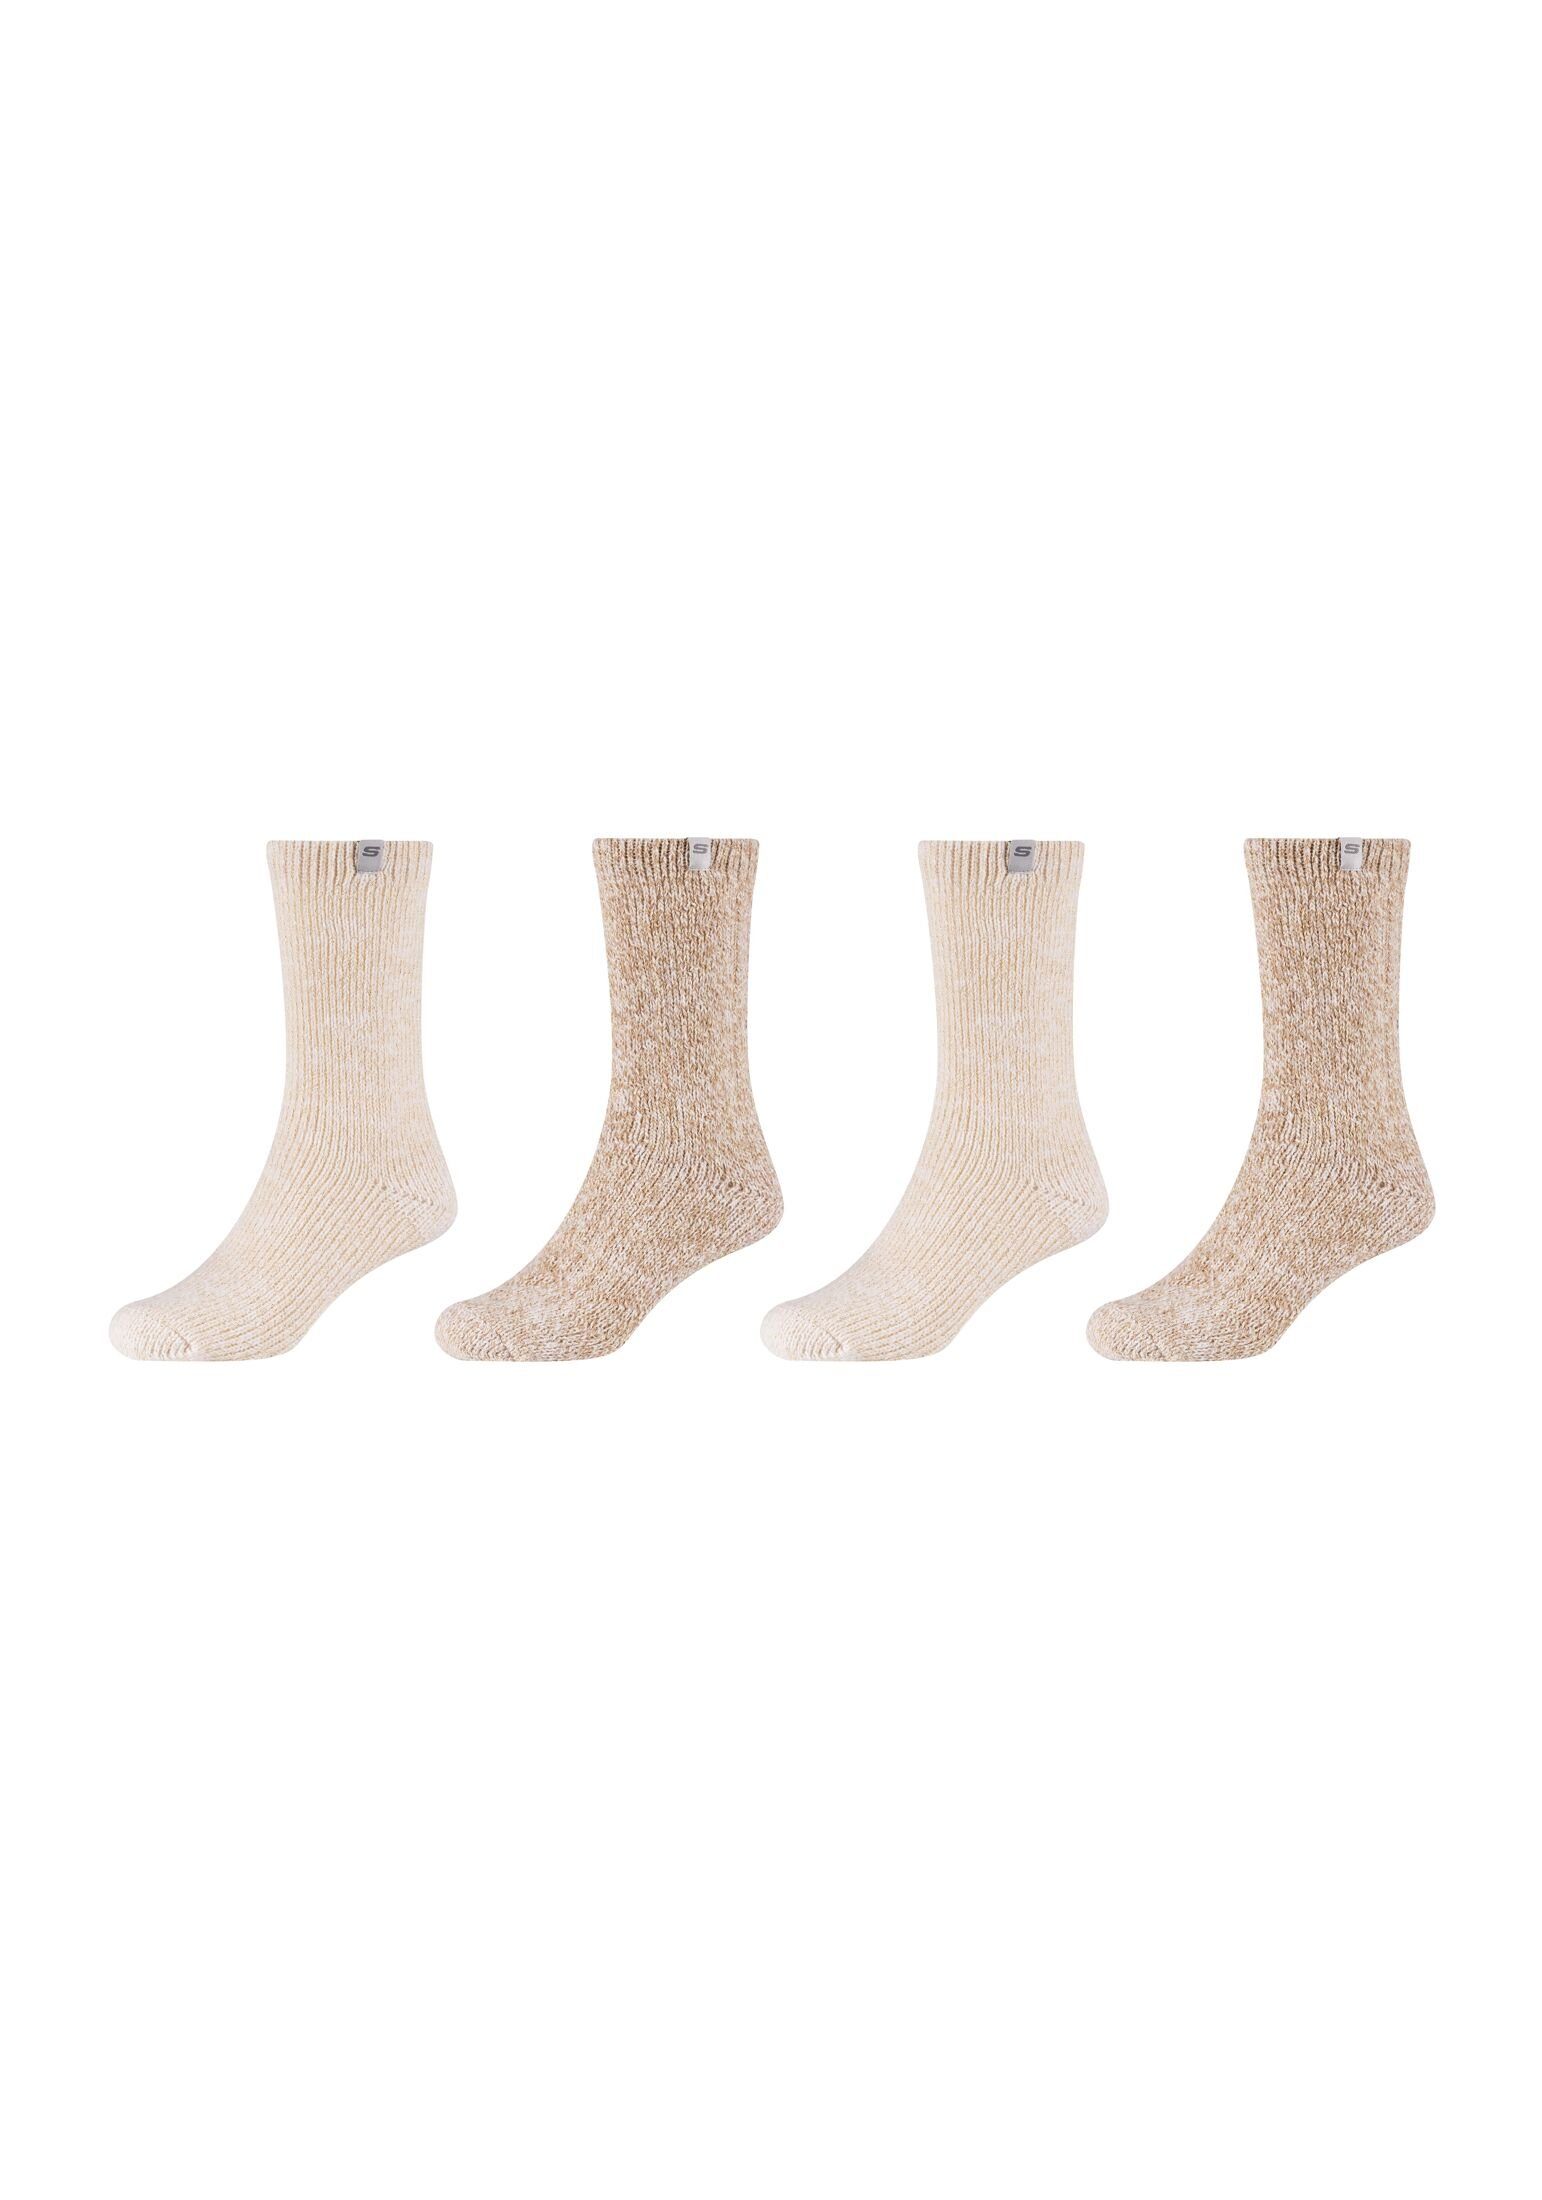 für Perfekt Skechers Socken Warme kalte 4er Socken Tage Pack, Gemütlichkeit: